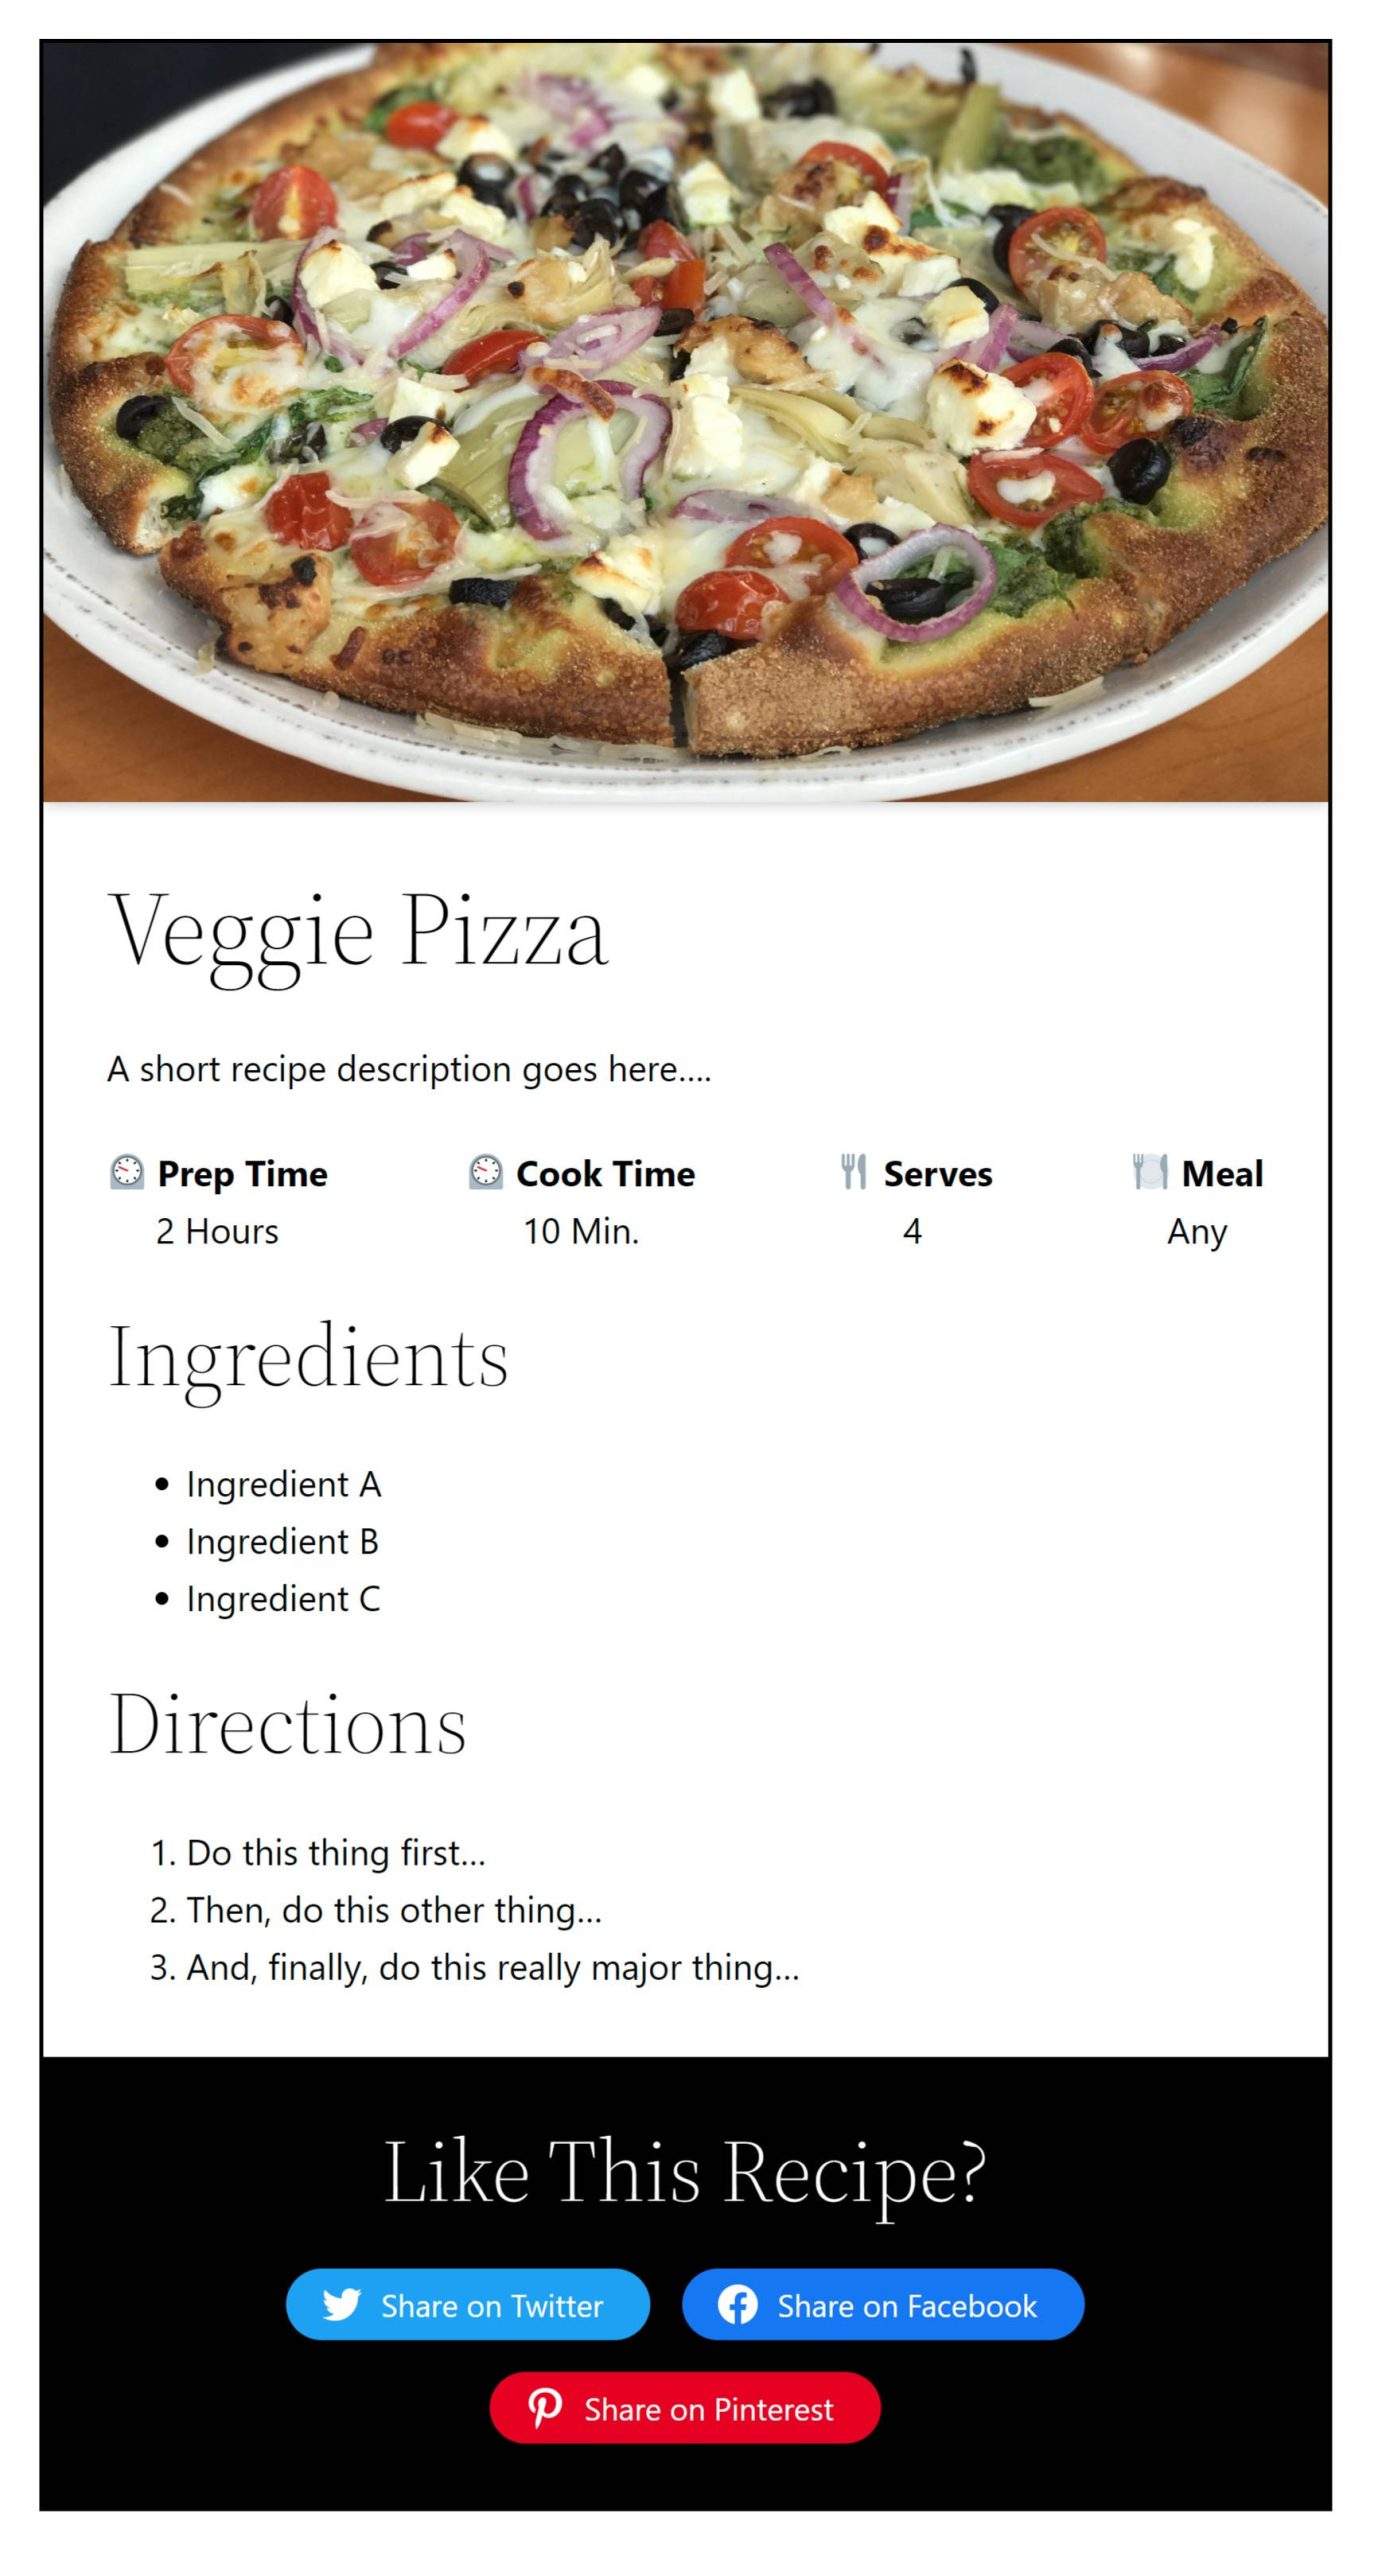 Eine Rezeptkarte mit dem Bild einer Pizza am oberen Rand.  Danach folgen ein Titel, eine Beschreibung, eine Zutatenliste, eine Anfahrtsbeschreibung und ein Abschnitt zum sozialen Teilen.